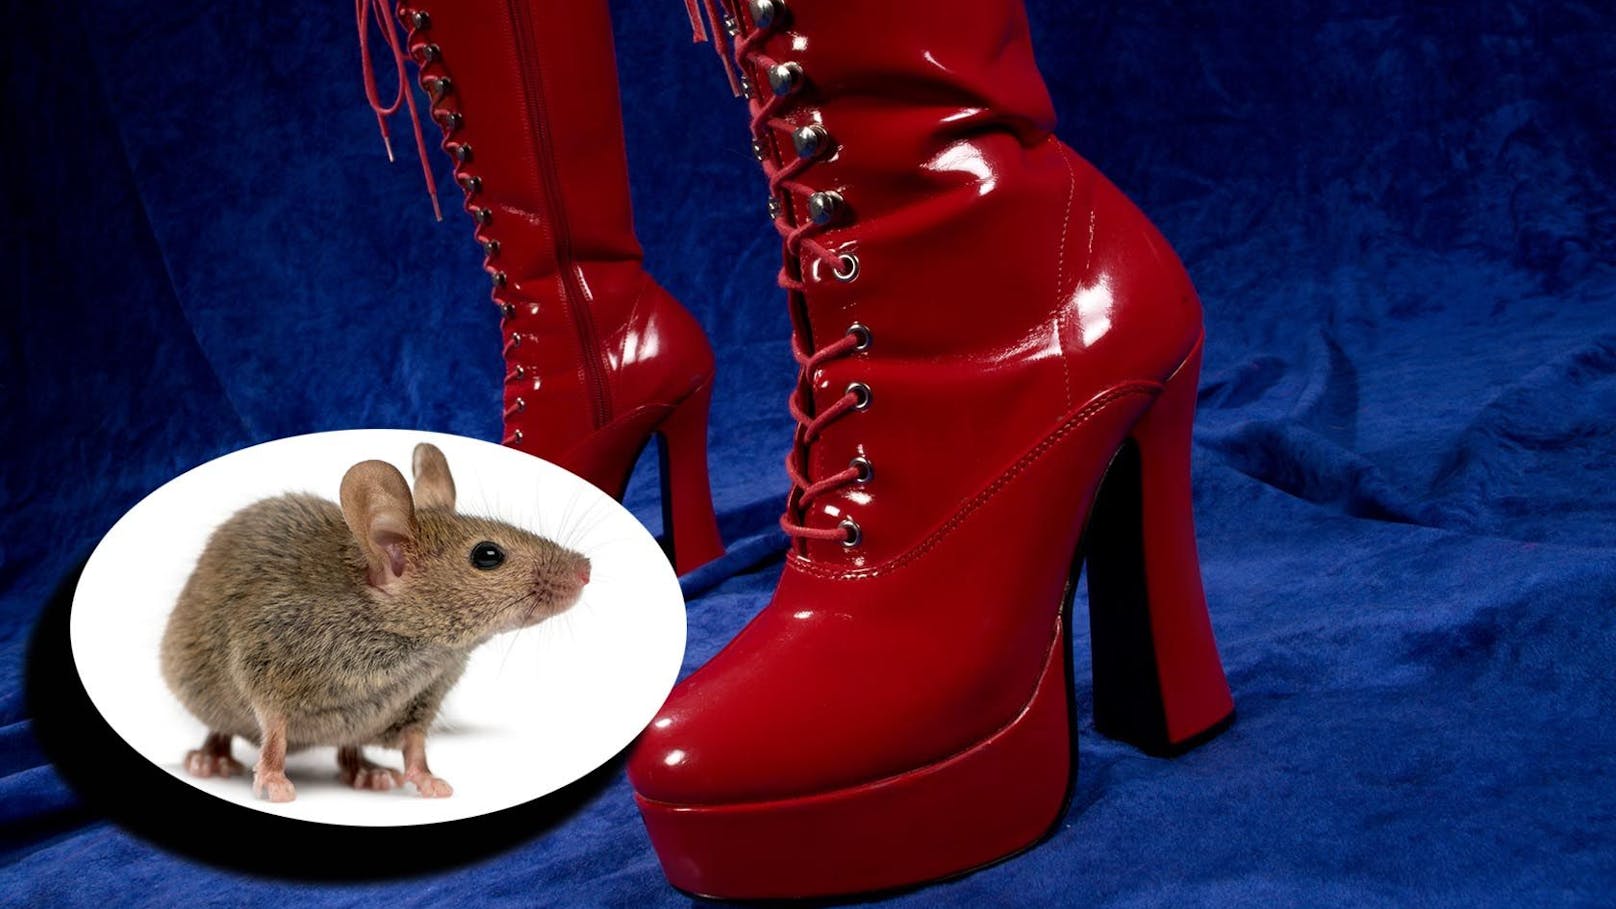 Domina zerquetschte 30 Mäuse für Sexvideos